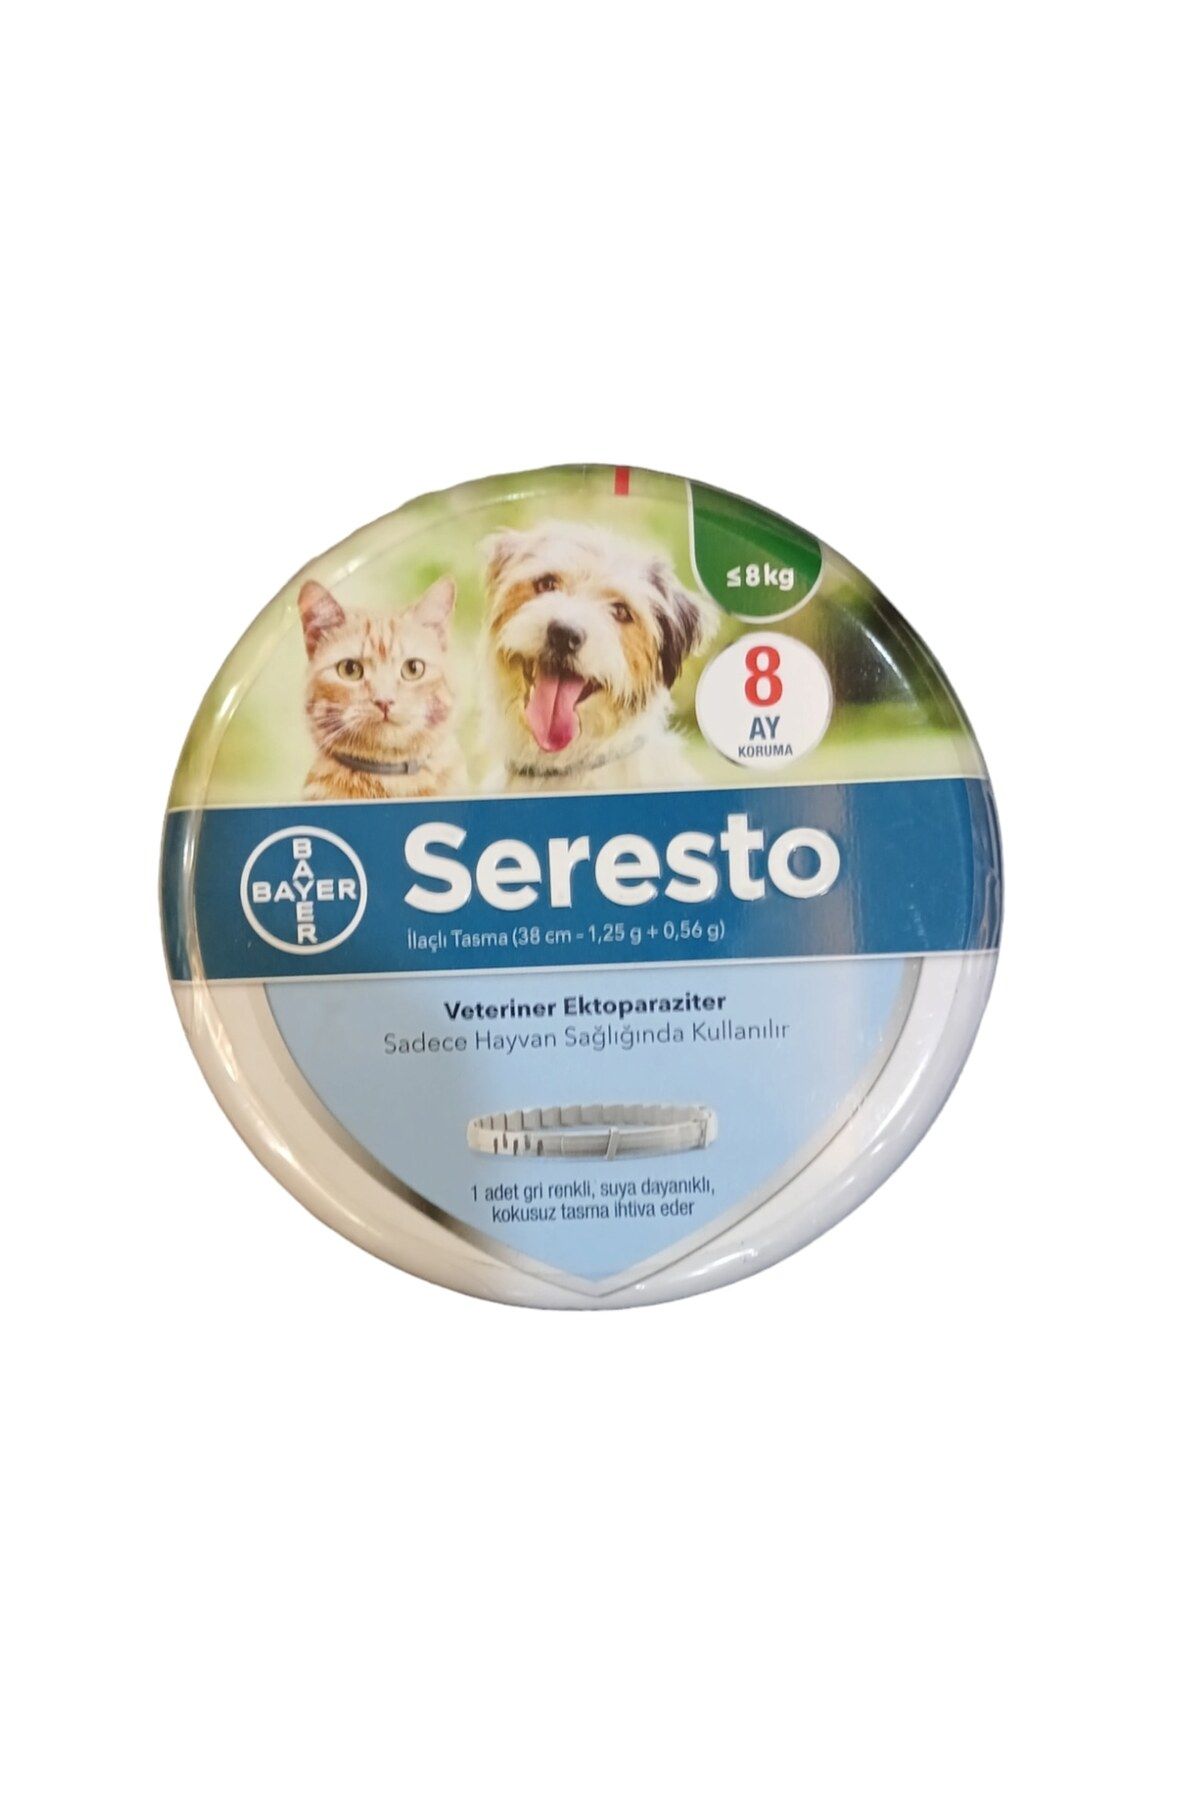 Seresto kedi ve küçük boy köpekler için 0-8 kg arası